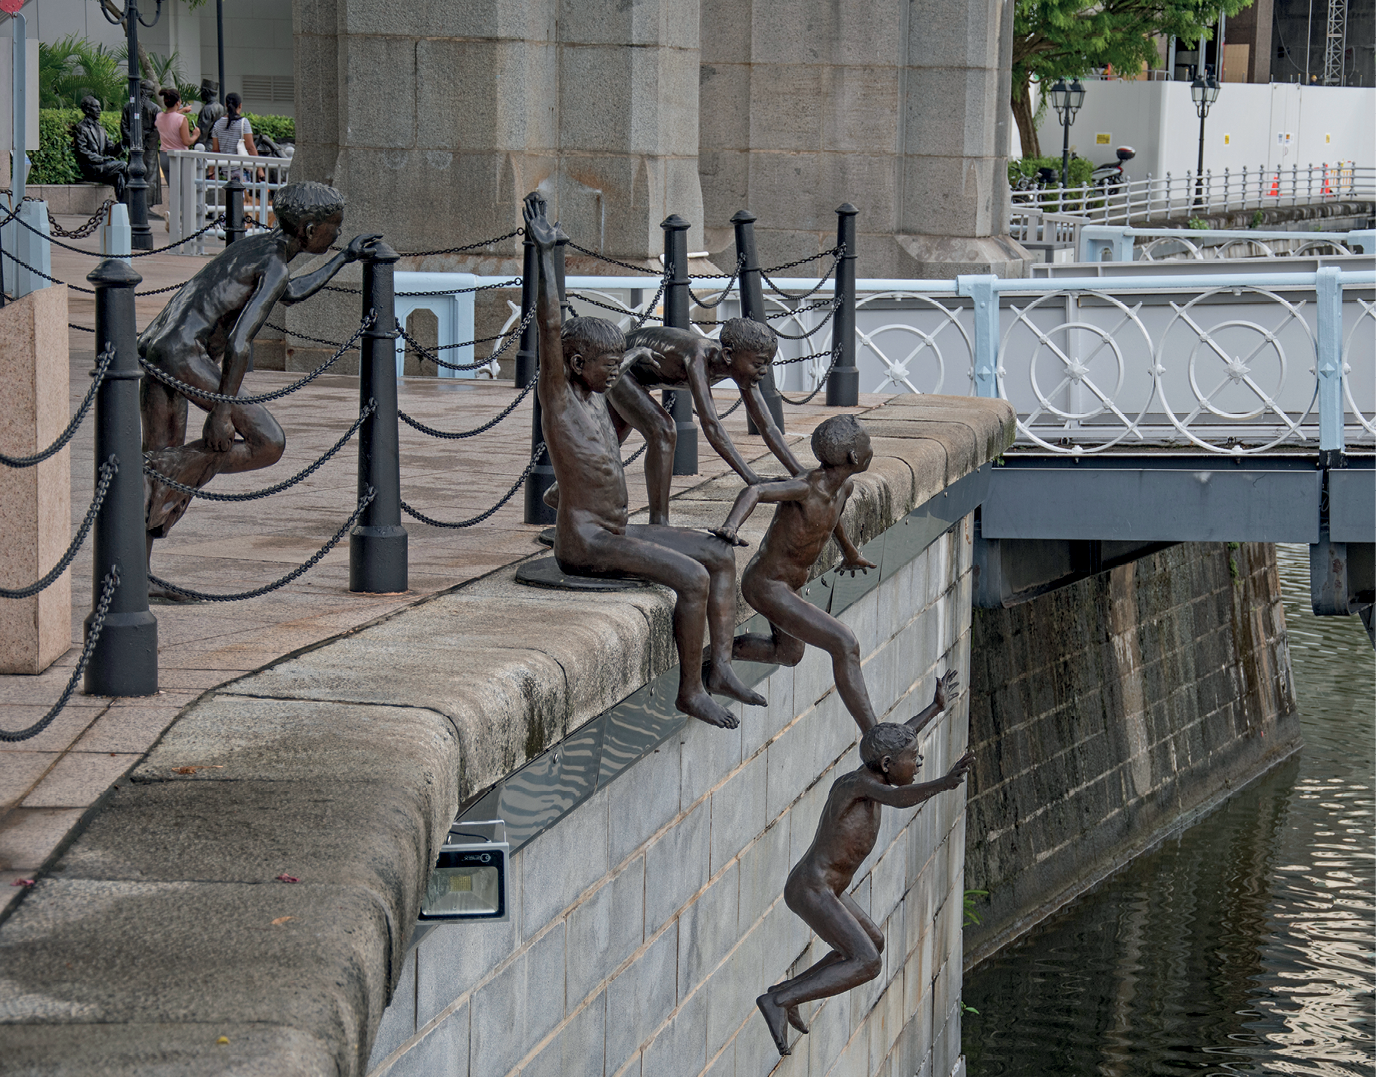 Fotografia. Escultura de bronze de diversas crianças em pé e sentadas à beira de um rio. Algumas estão saltando para dentro do rio.